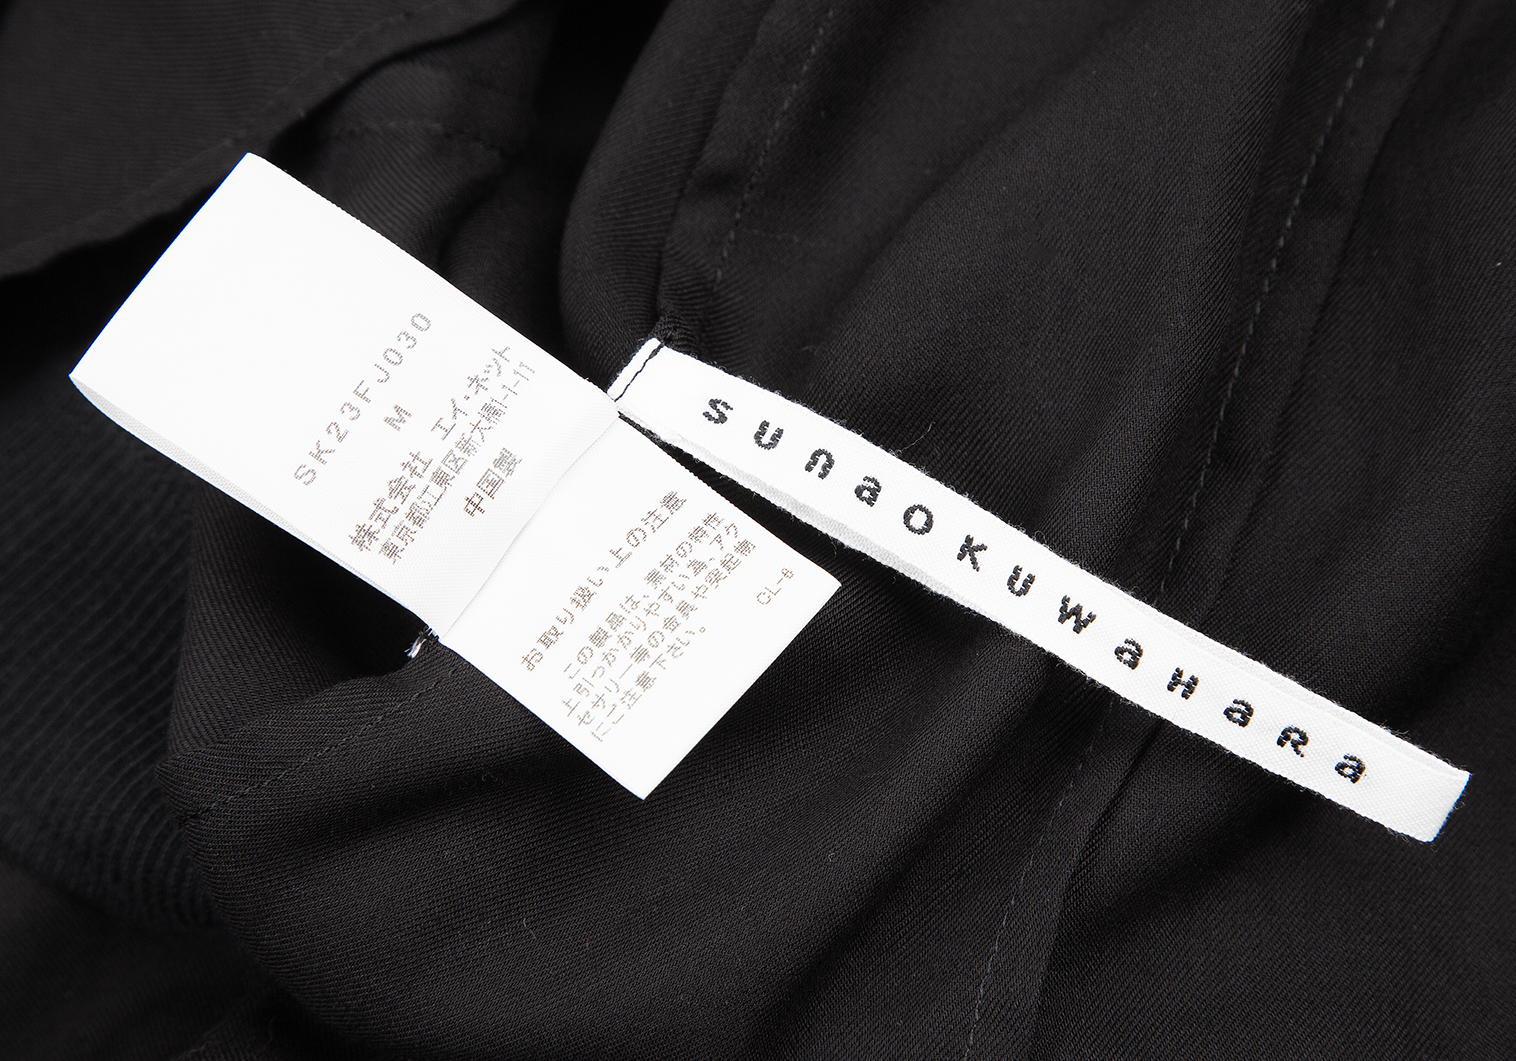 スナオクワハラsunaokuwahara ニットアップリケ装飾半袖ブラウス 黒M